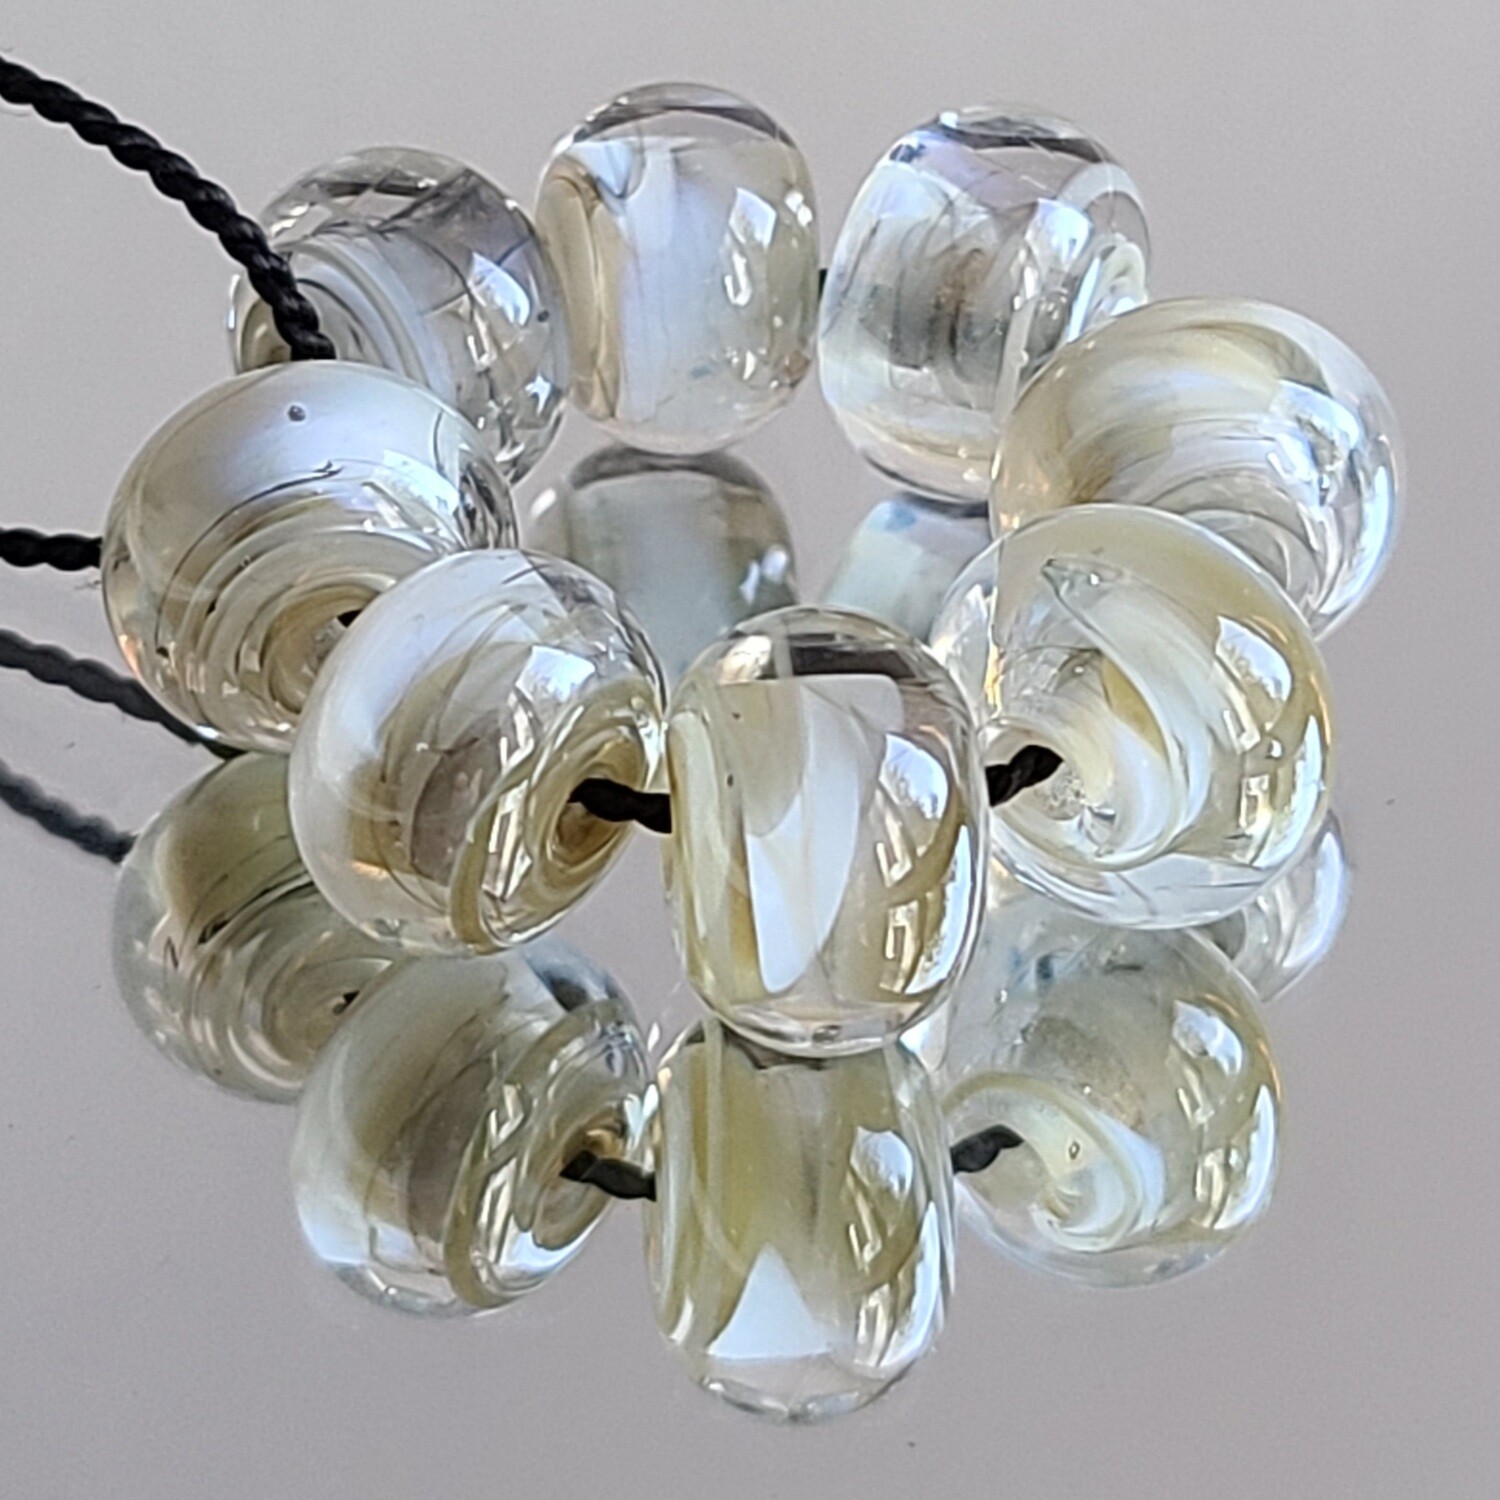 Belgian Linen Handmade Lampwork Beads